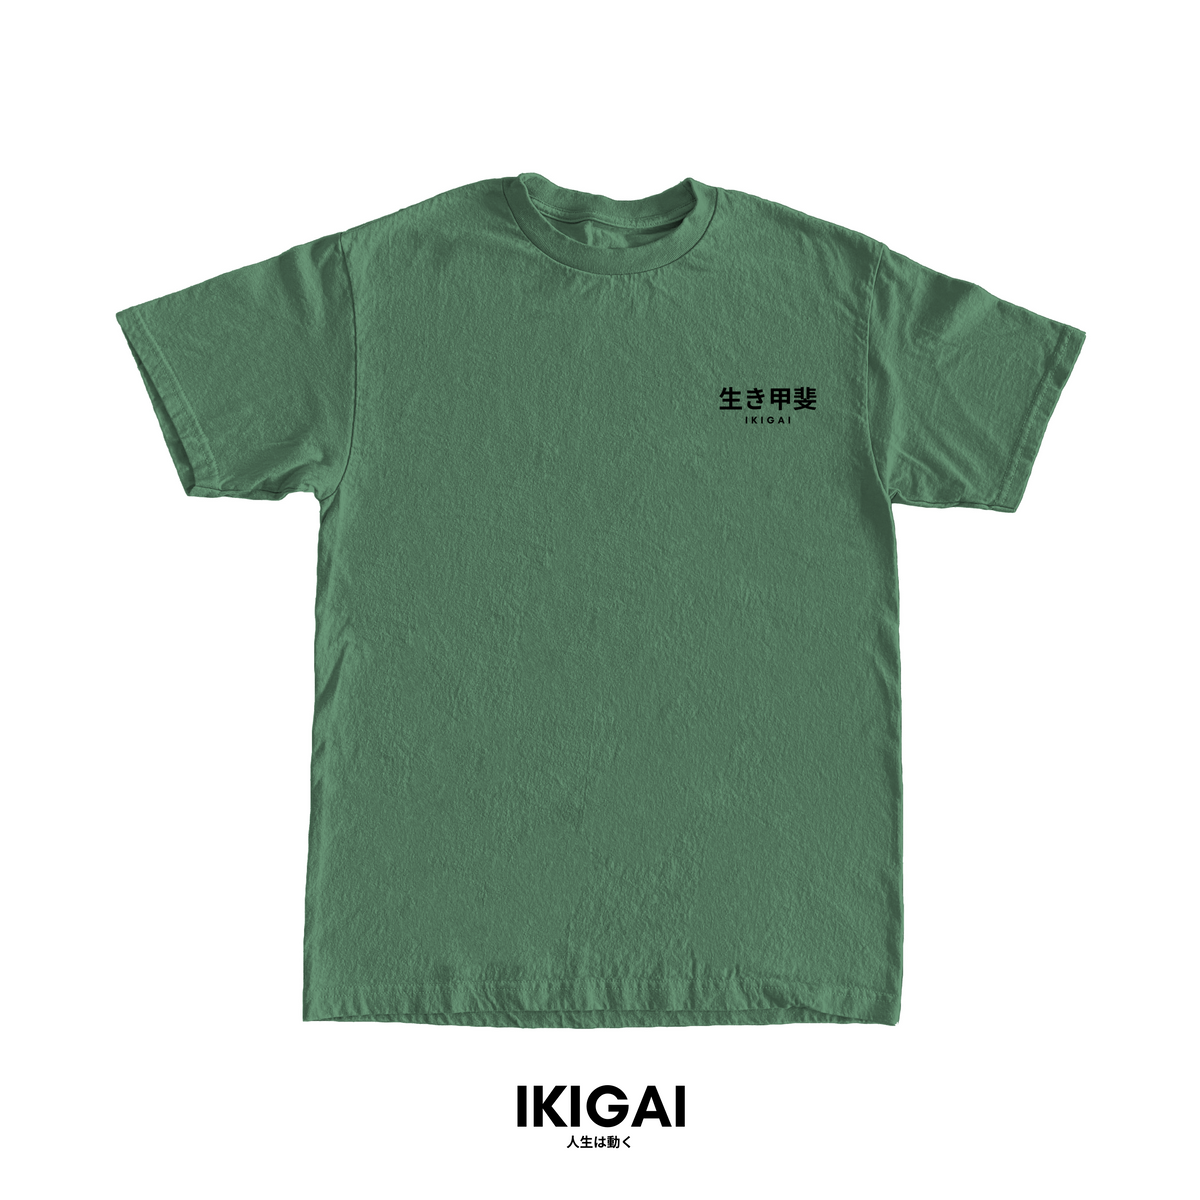 IKIGAI Tee (Pastel Green Black Logo) – Ikigai Movement